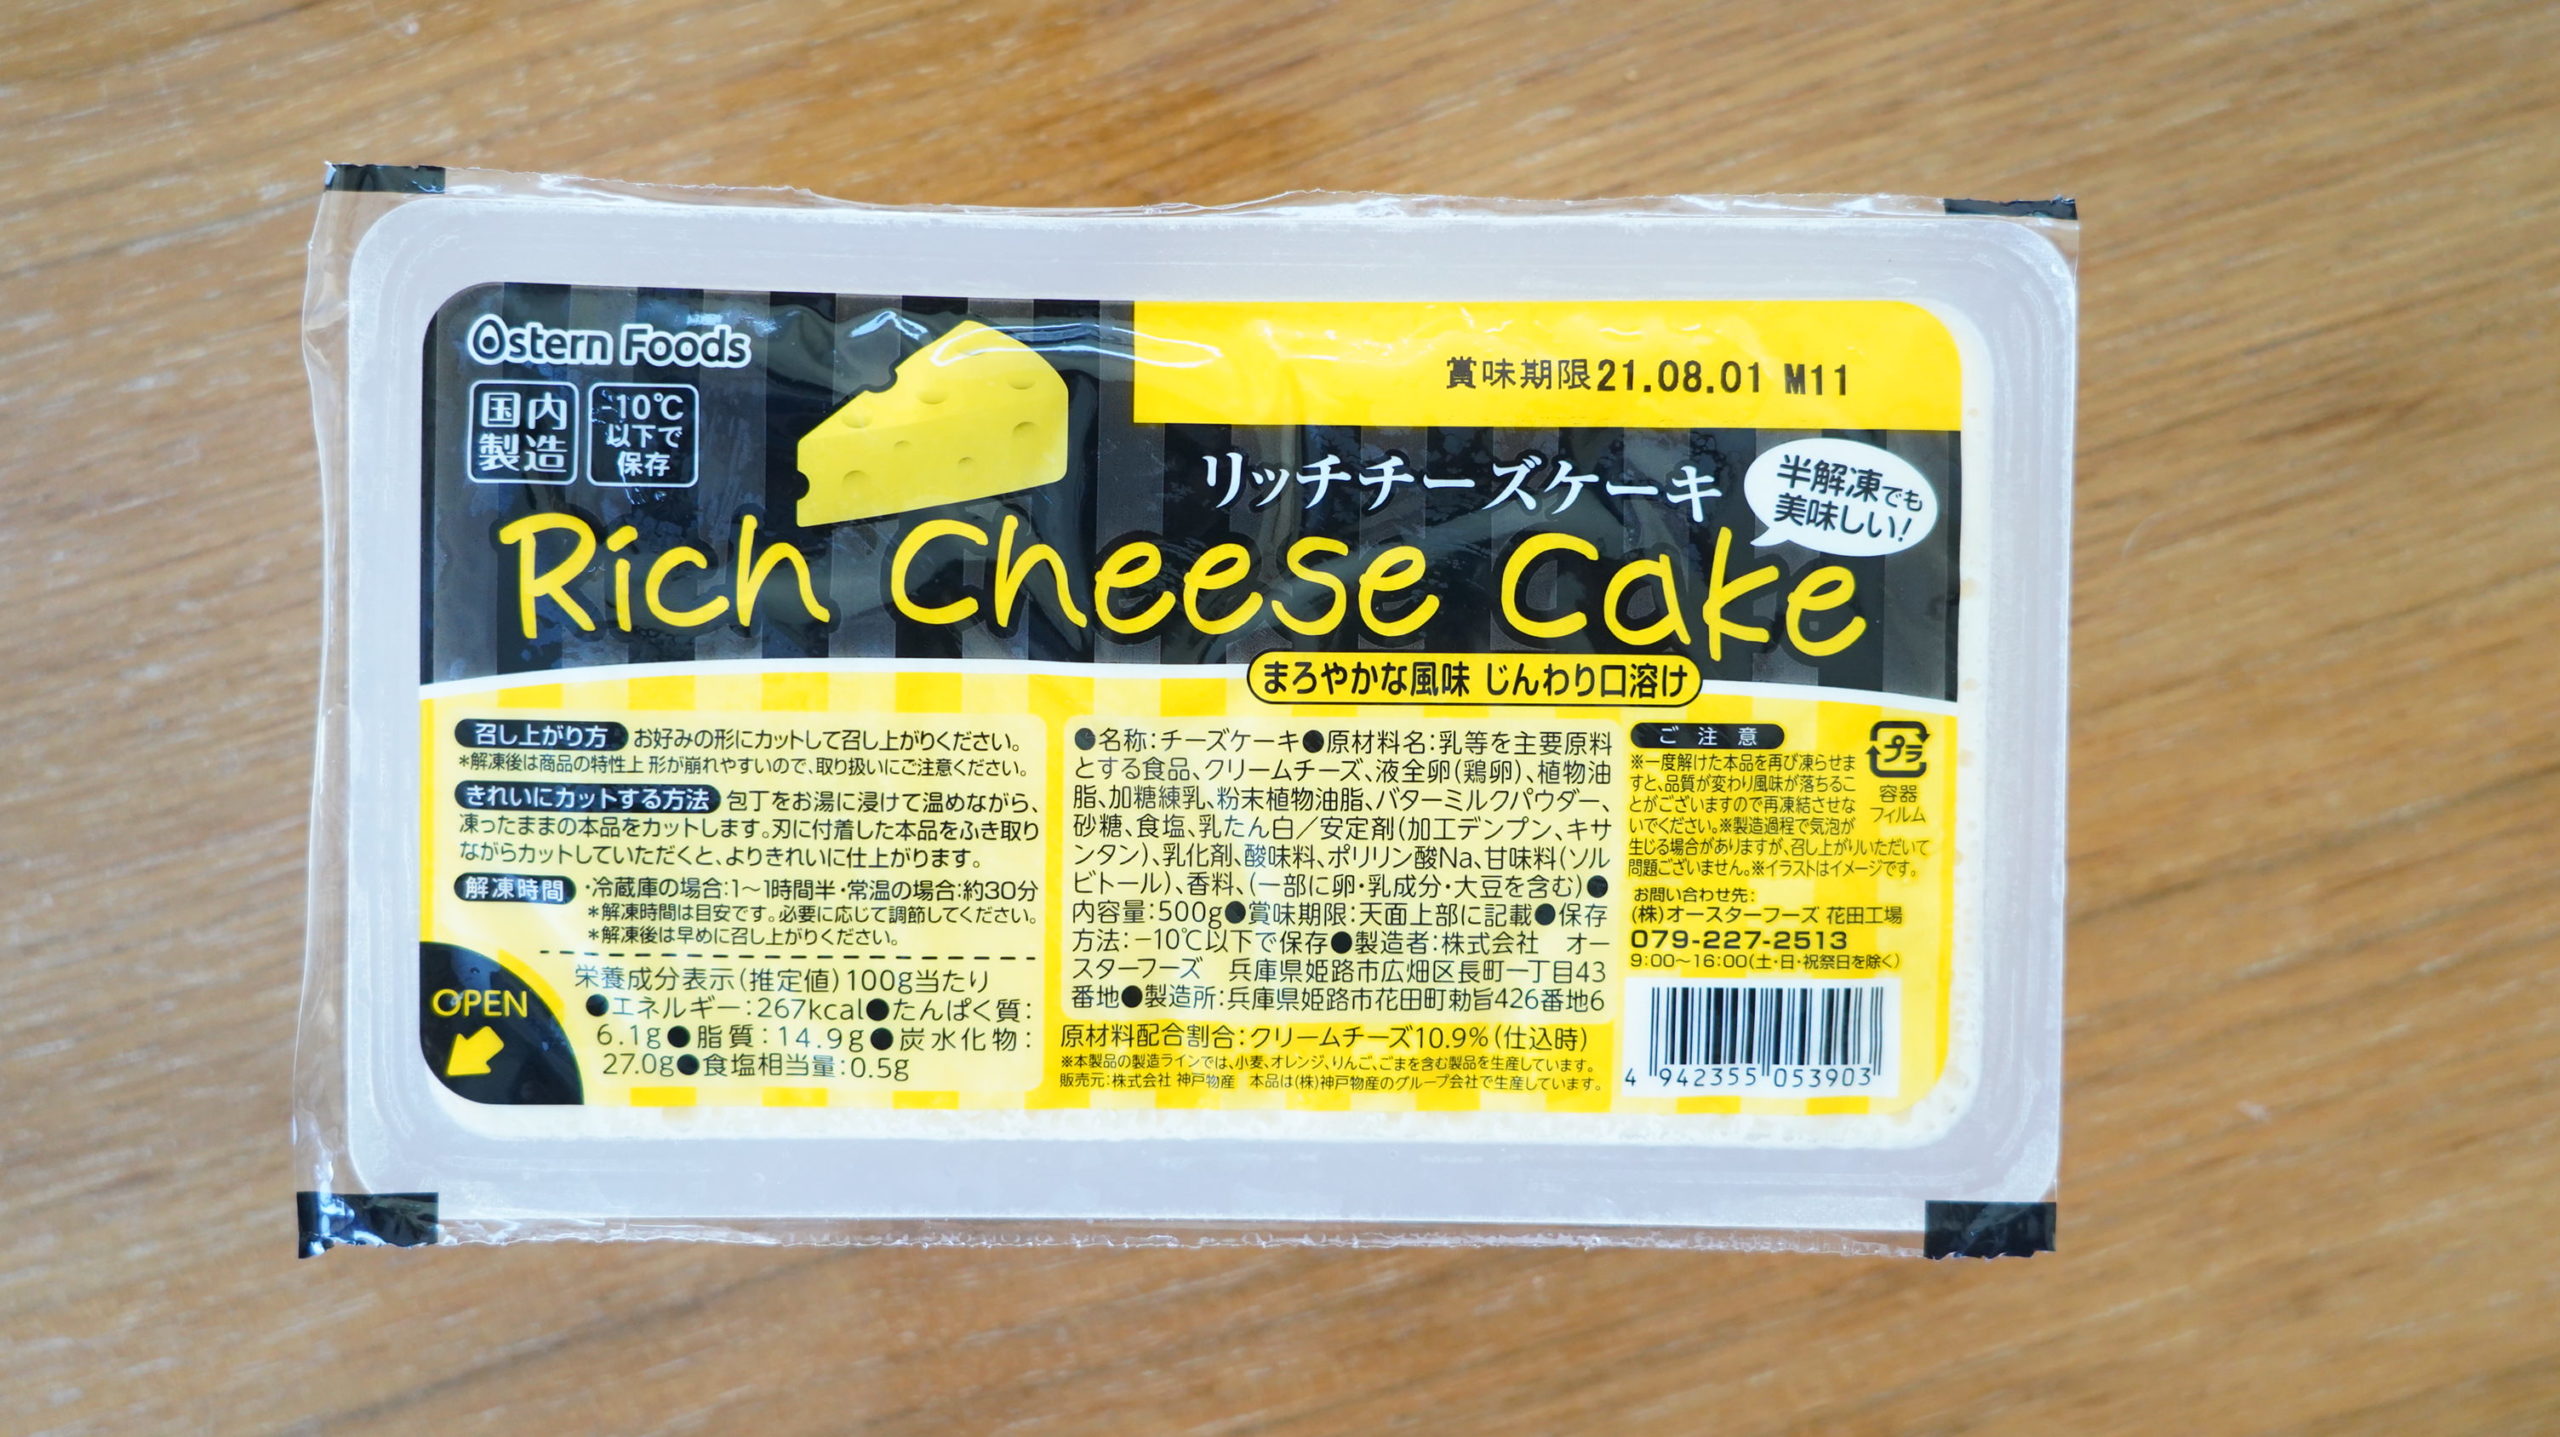 業務スーパーのおすすめ冷凍食品「リッチチーズケーキ」のパッケージの写真